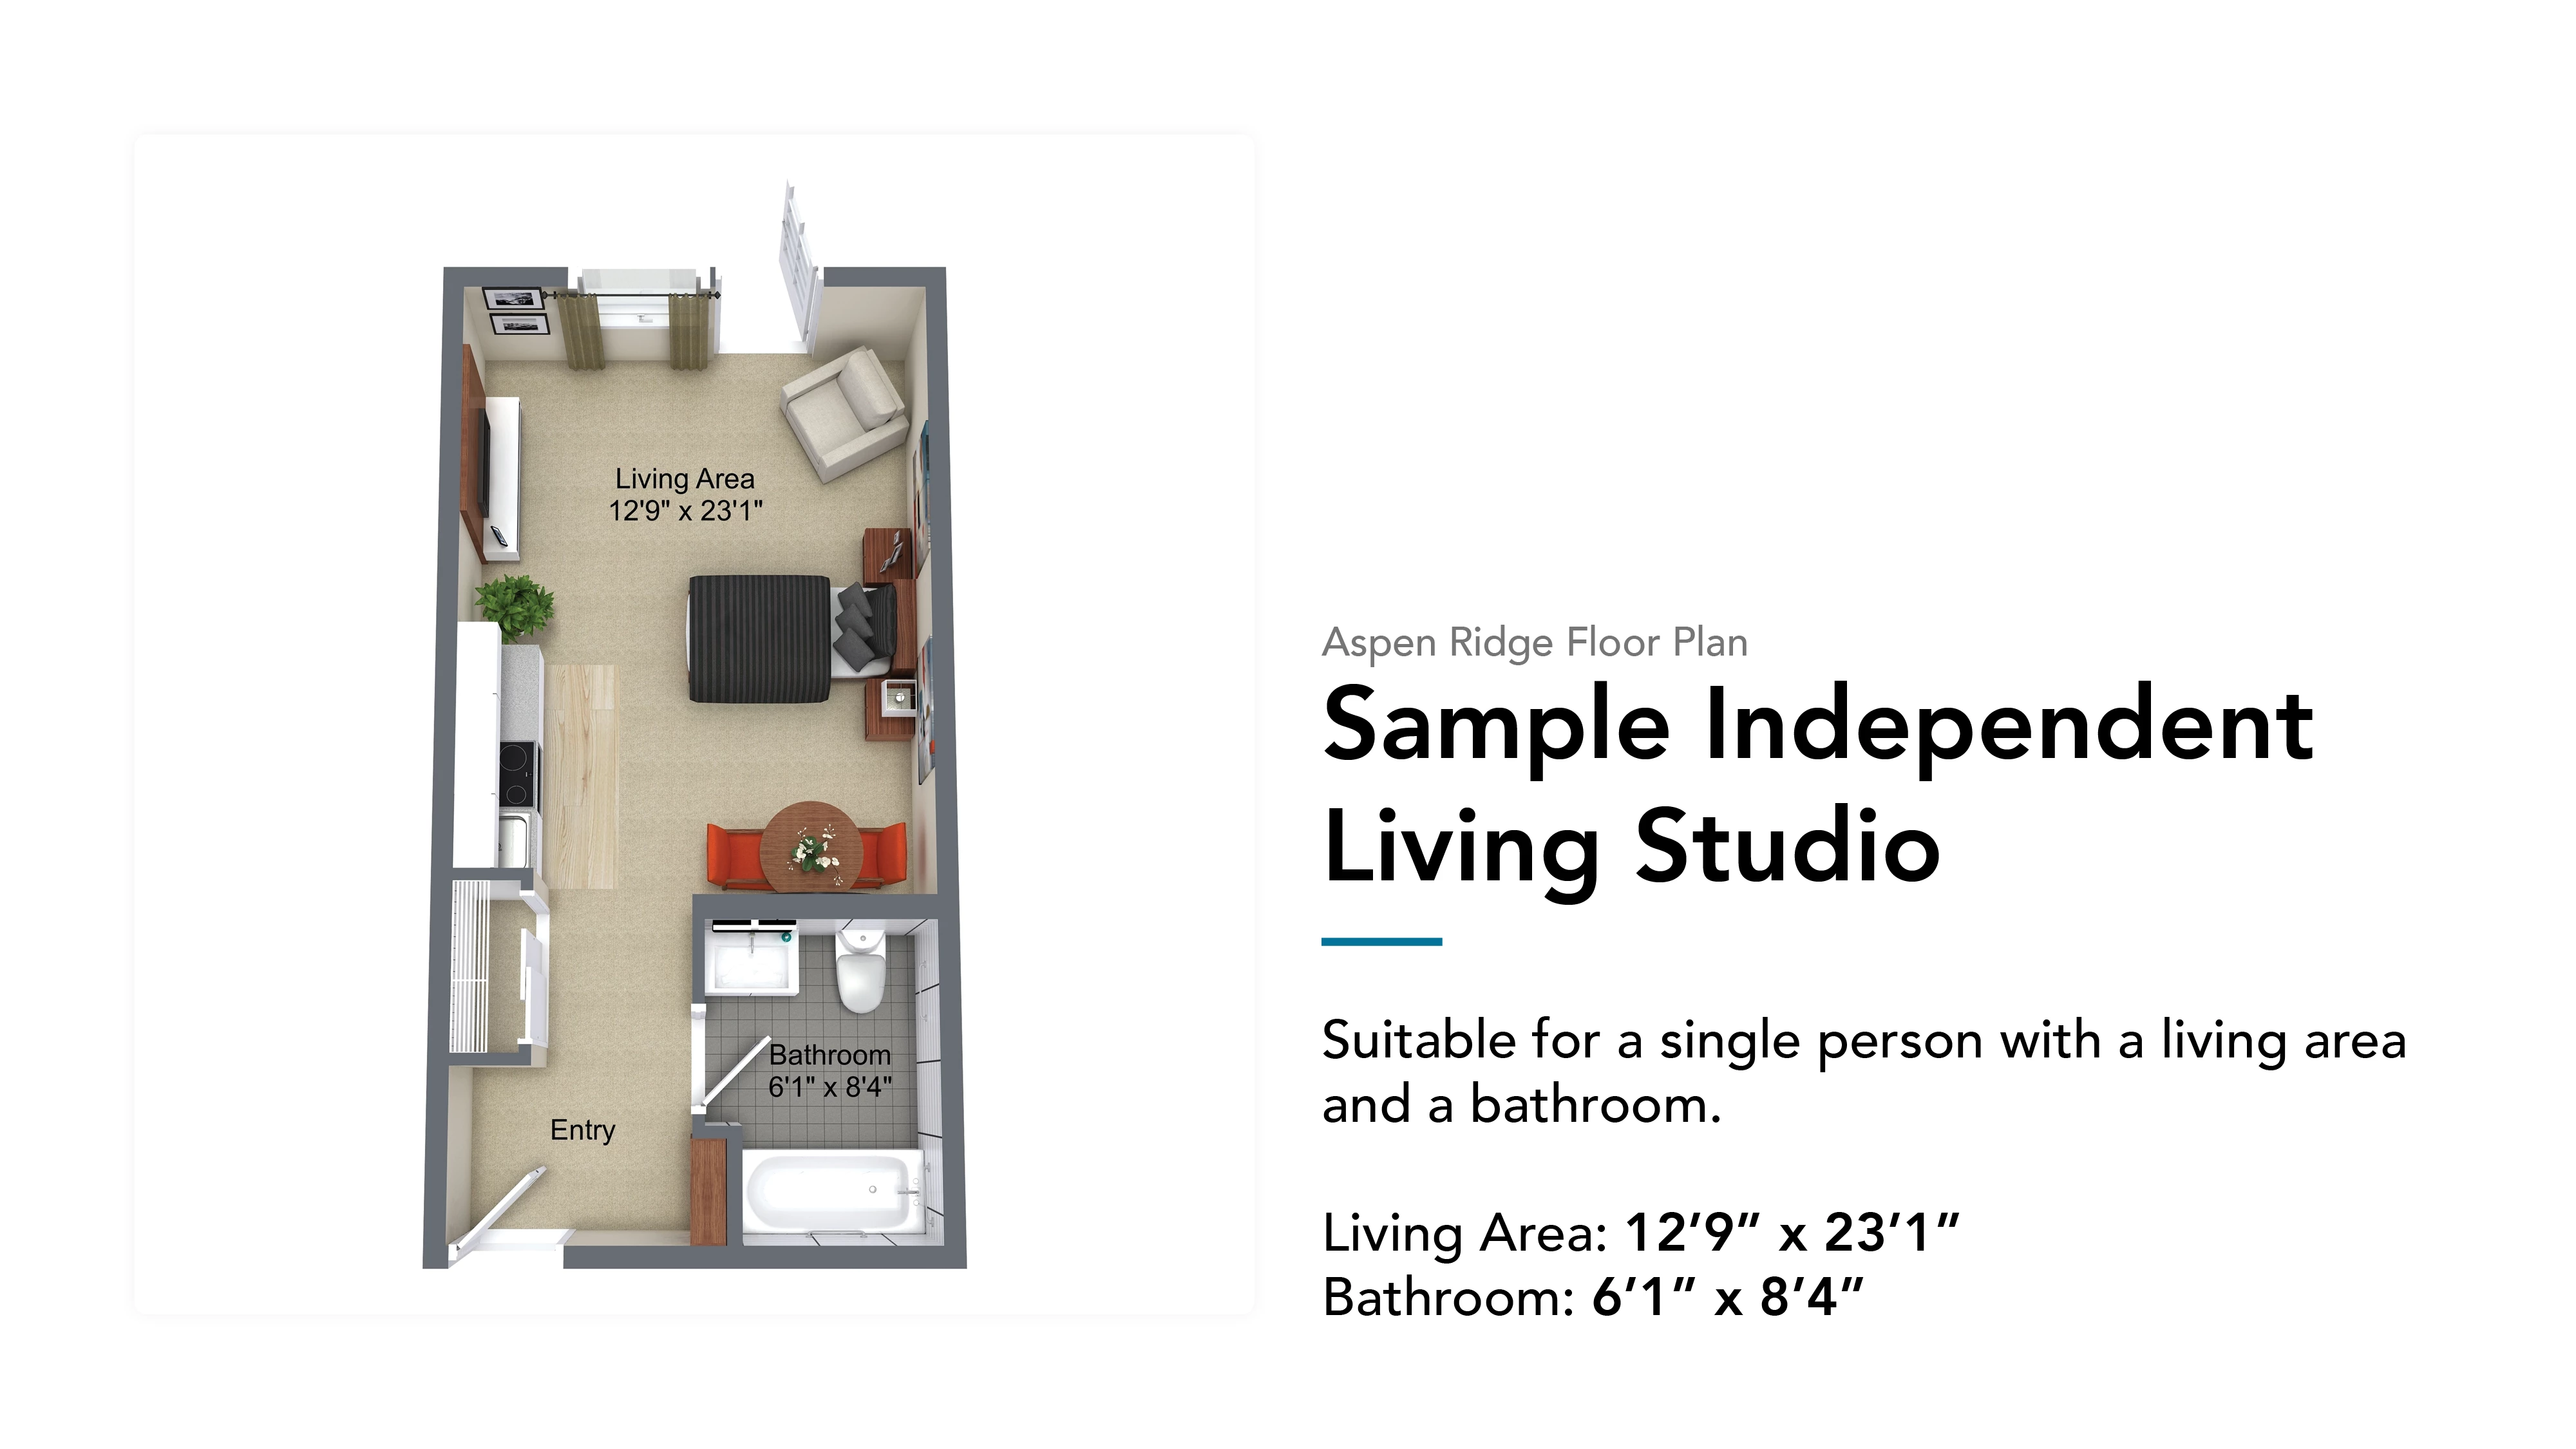 Sample independent living studio 357sq/ft floor plan